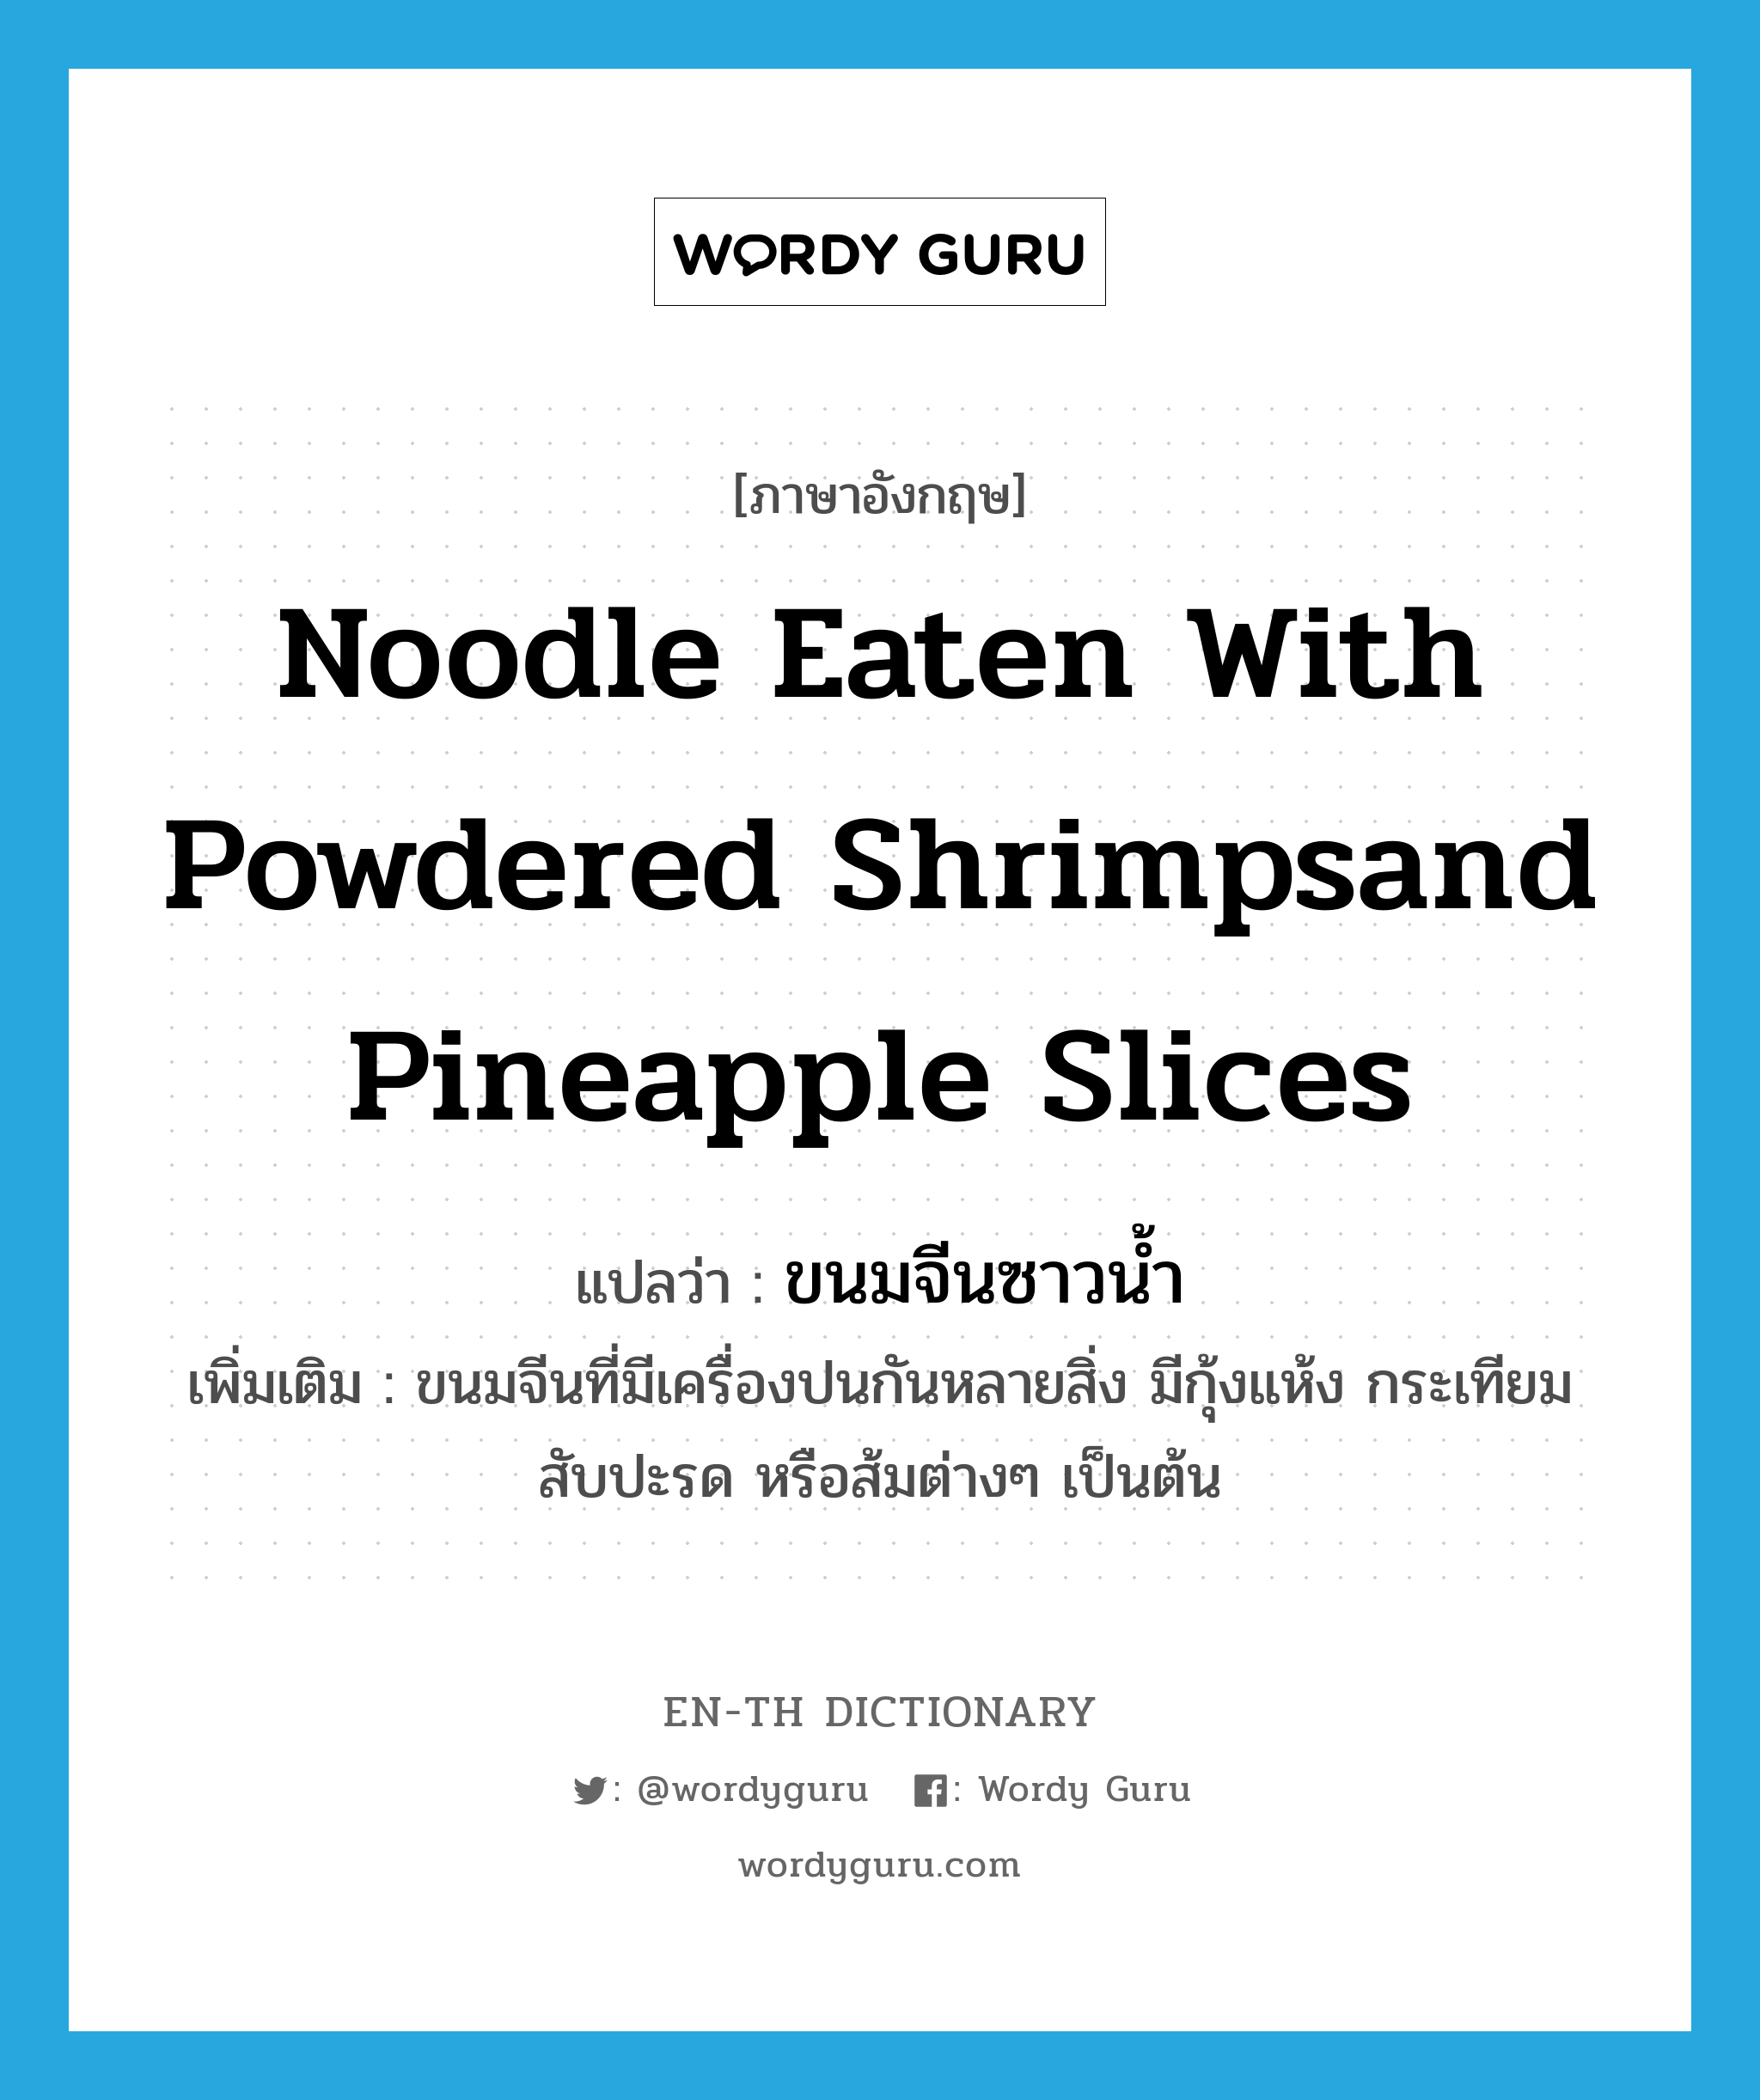 noodle eaten with powdered shrimpsand pineapple slices แปลว่า?, คำศัพท์ภาษาอังกฤษ noodle eaten with powdered shrimpsand pineapple slices แปลว่า ขนมจีนซาวน้ำ ประเภท N เพิ่มเติม ขนมจีนที่มีเครื่องปนกันหลายสิ่ง มีกุ้งแห้ง กระเทียม สับปะรด หรือส้มต่างๆ เป็นต้น หมวด N